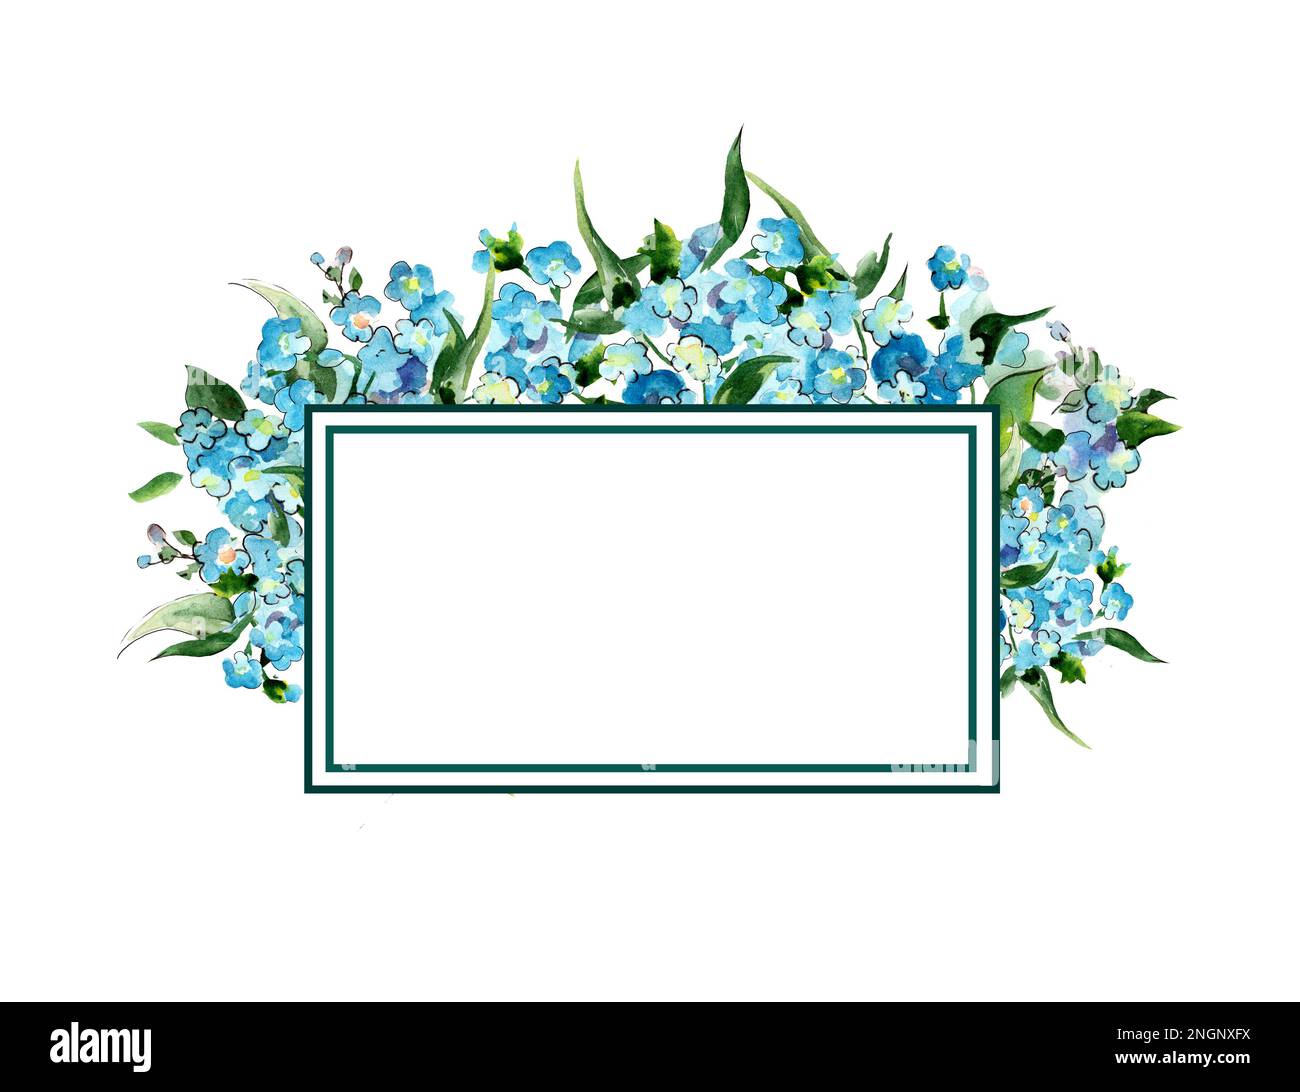 Cadre pour la conception. Dessin aquarelle avec fleurs bleues Banque D'Images